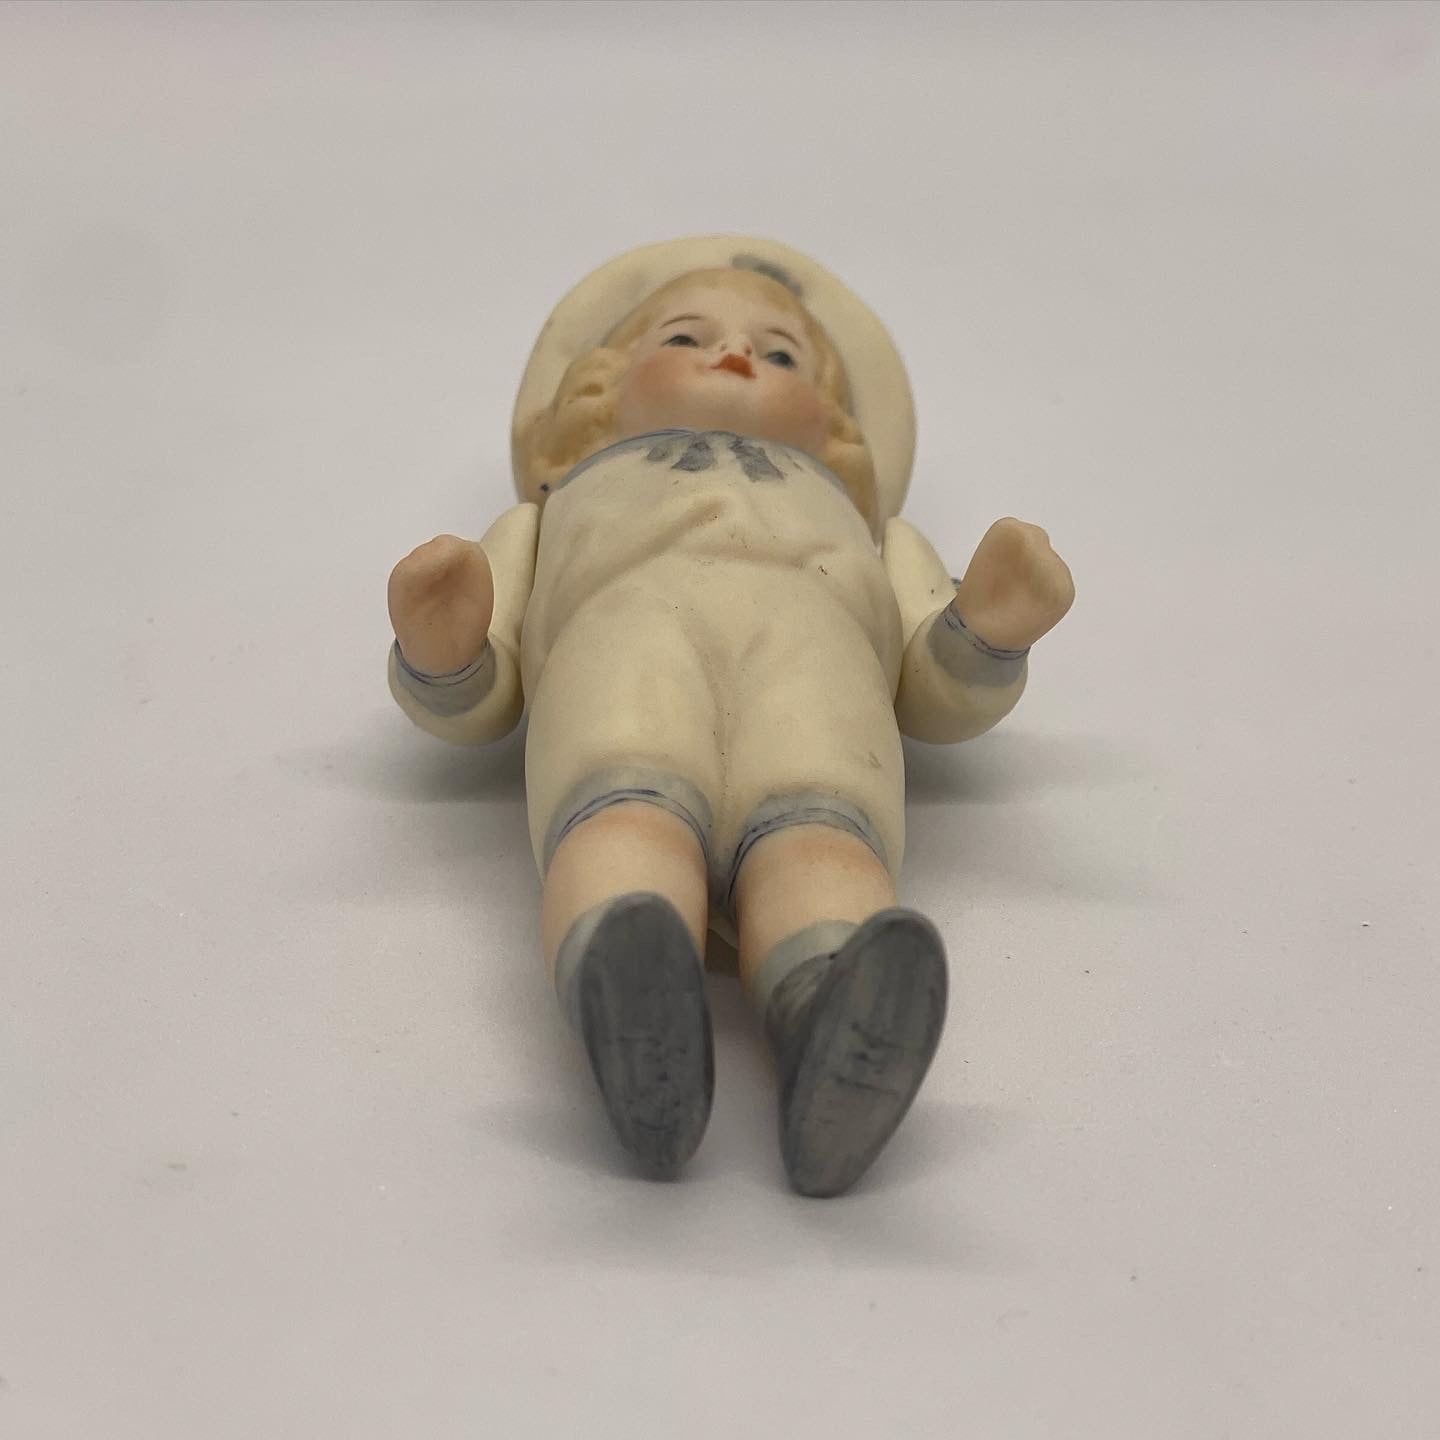 Lovely vintage Hertwig German sailor boy figurine in bisque porcelain